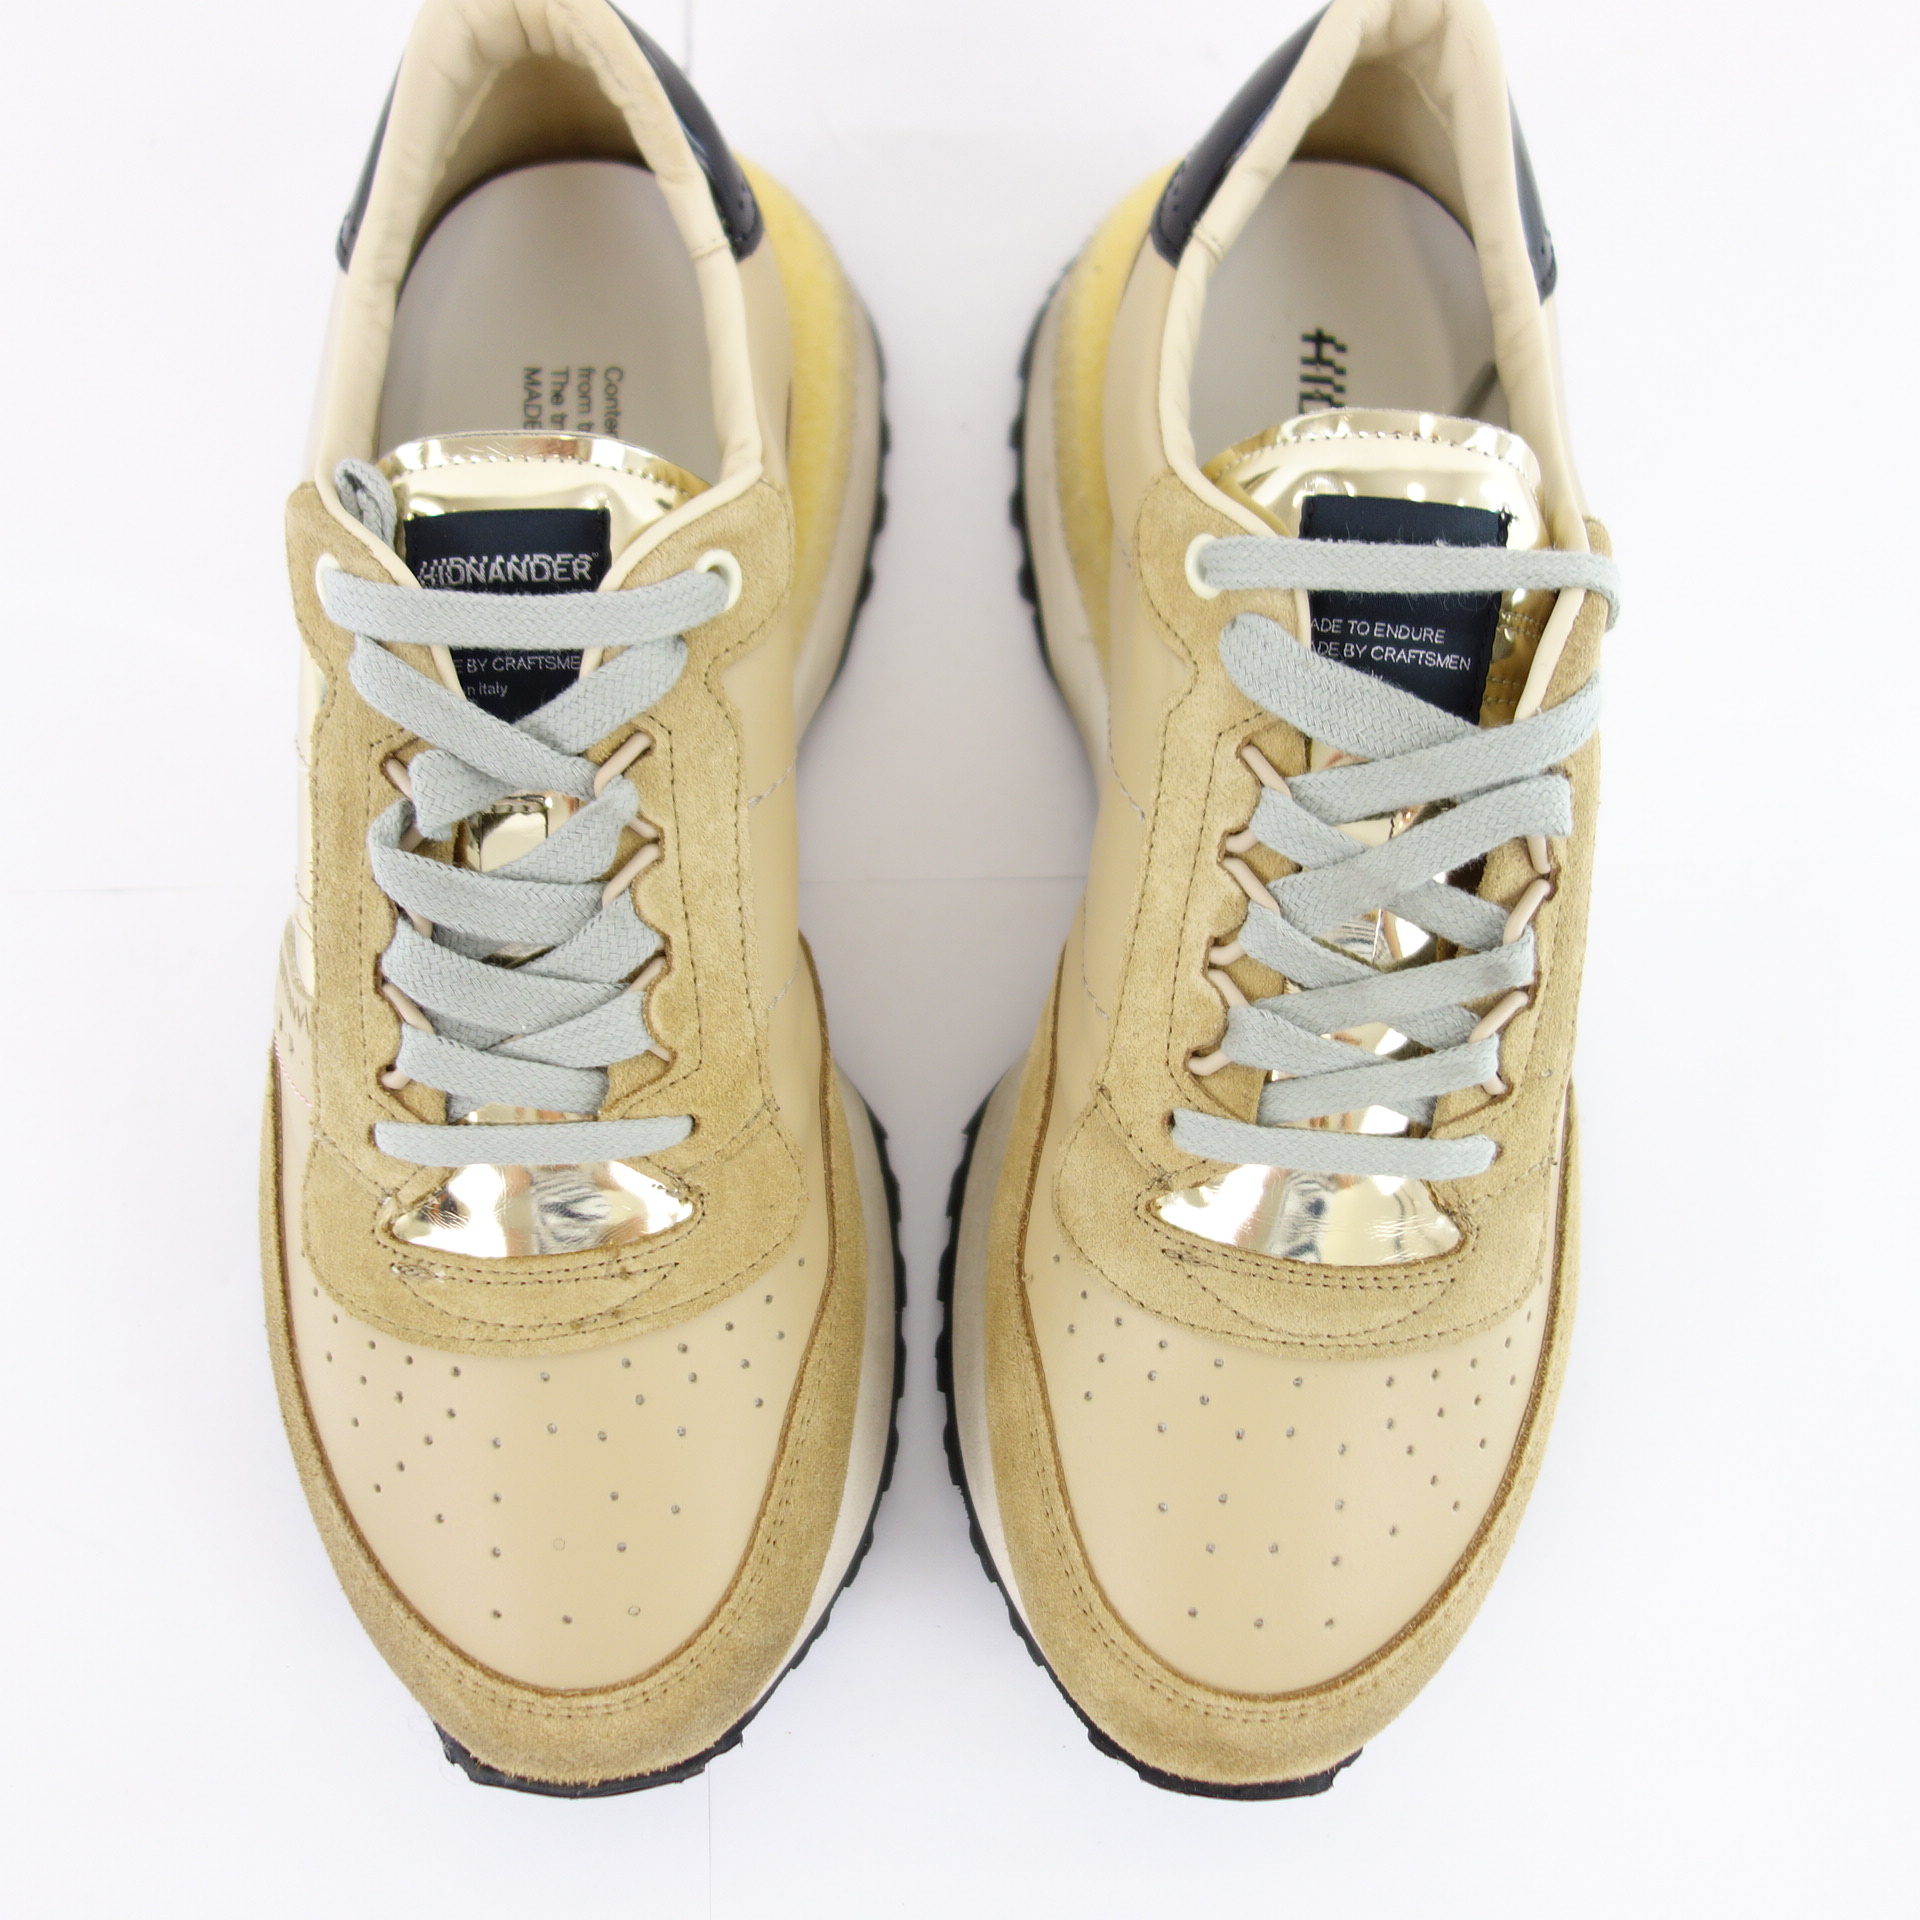 HIDNANDER Damen Schuhe Low Top Sneaker Sportschuhe Gold Modell TENKEI Leder Textil